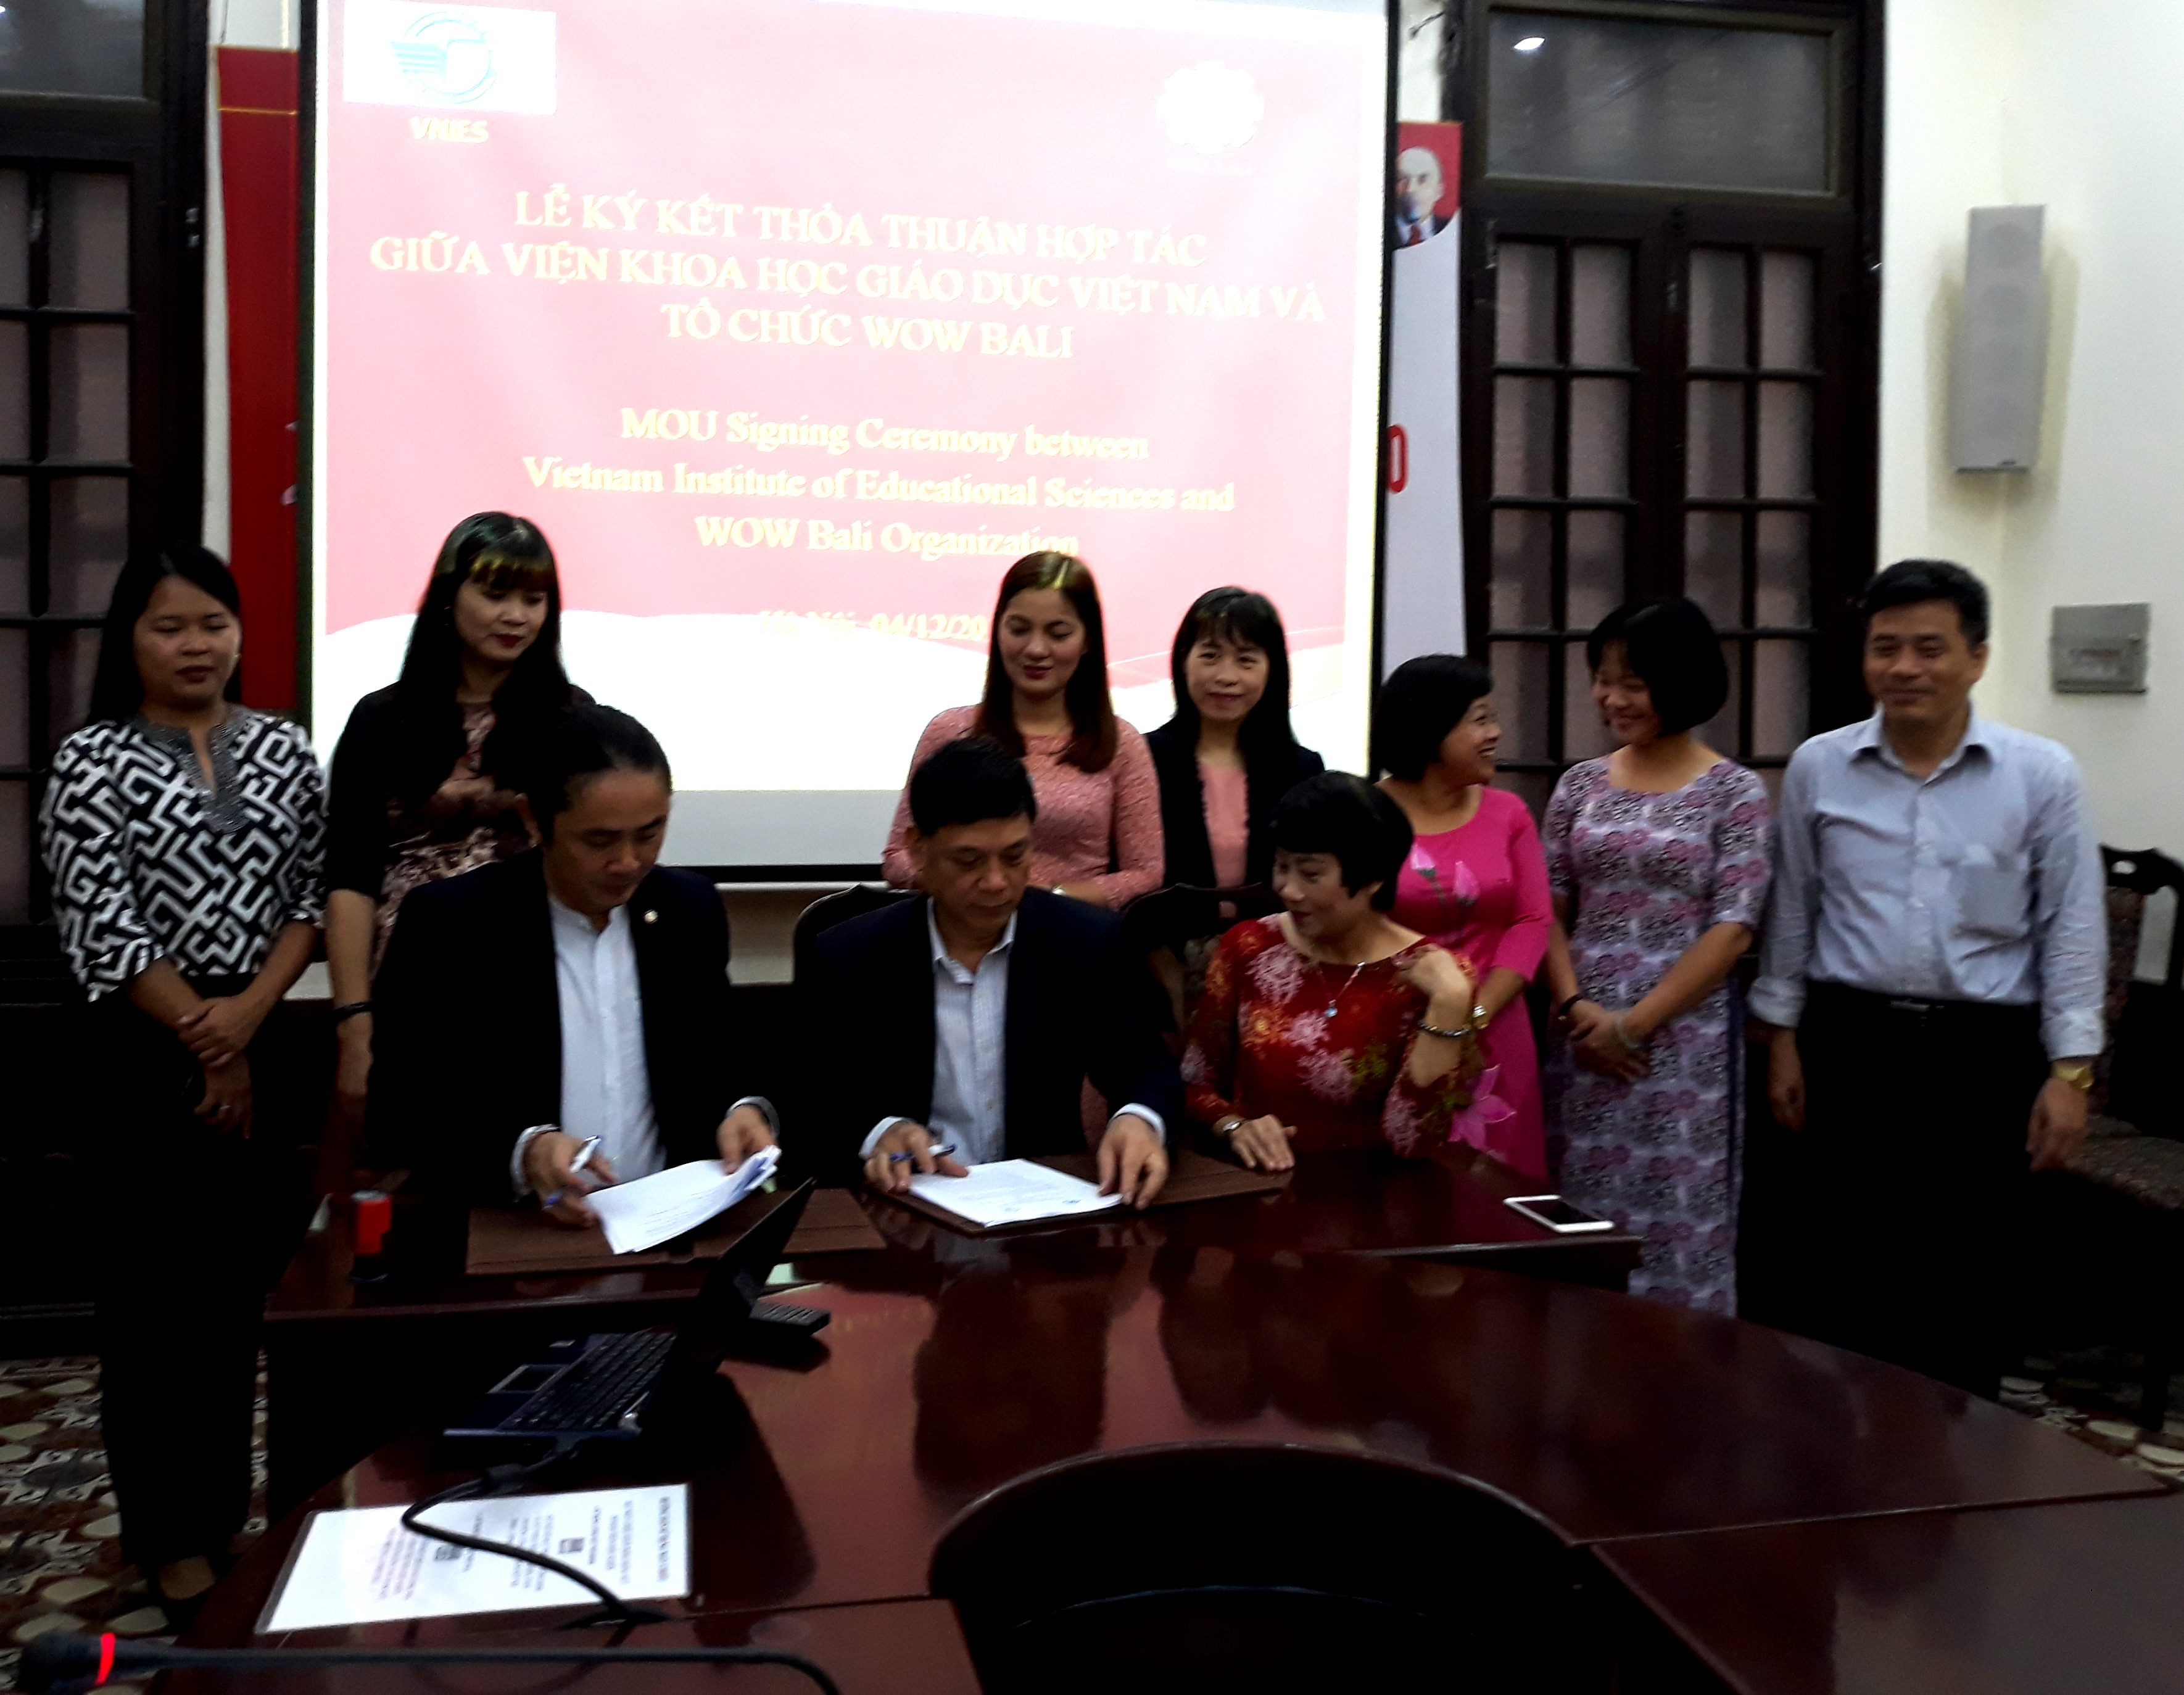 Thỏa thuận hợp tác về giáo dục và đào tạo giữa Viện Khoa học Giáo dục Việt Nam và Tổ chức WOW Bali